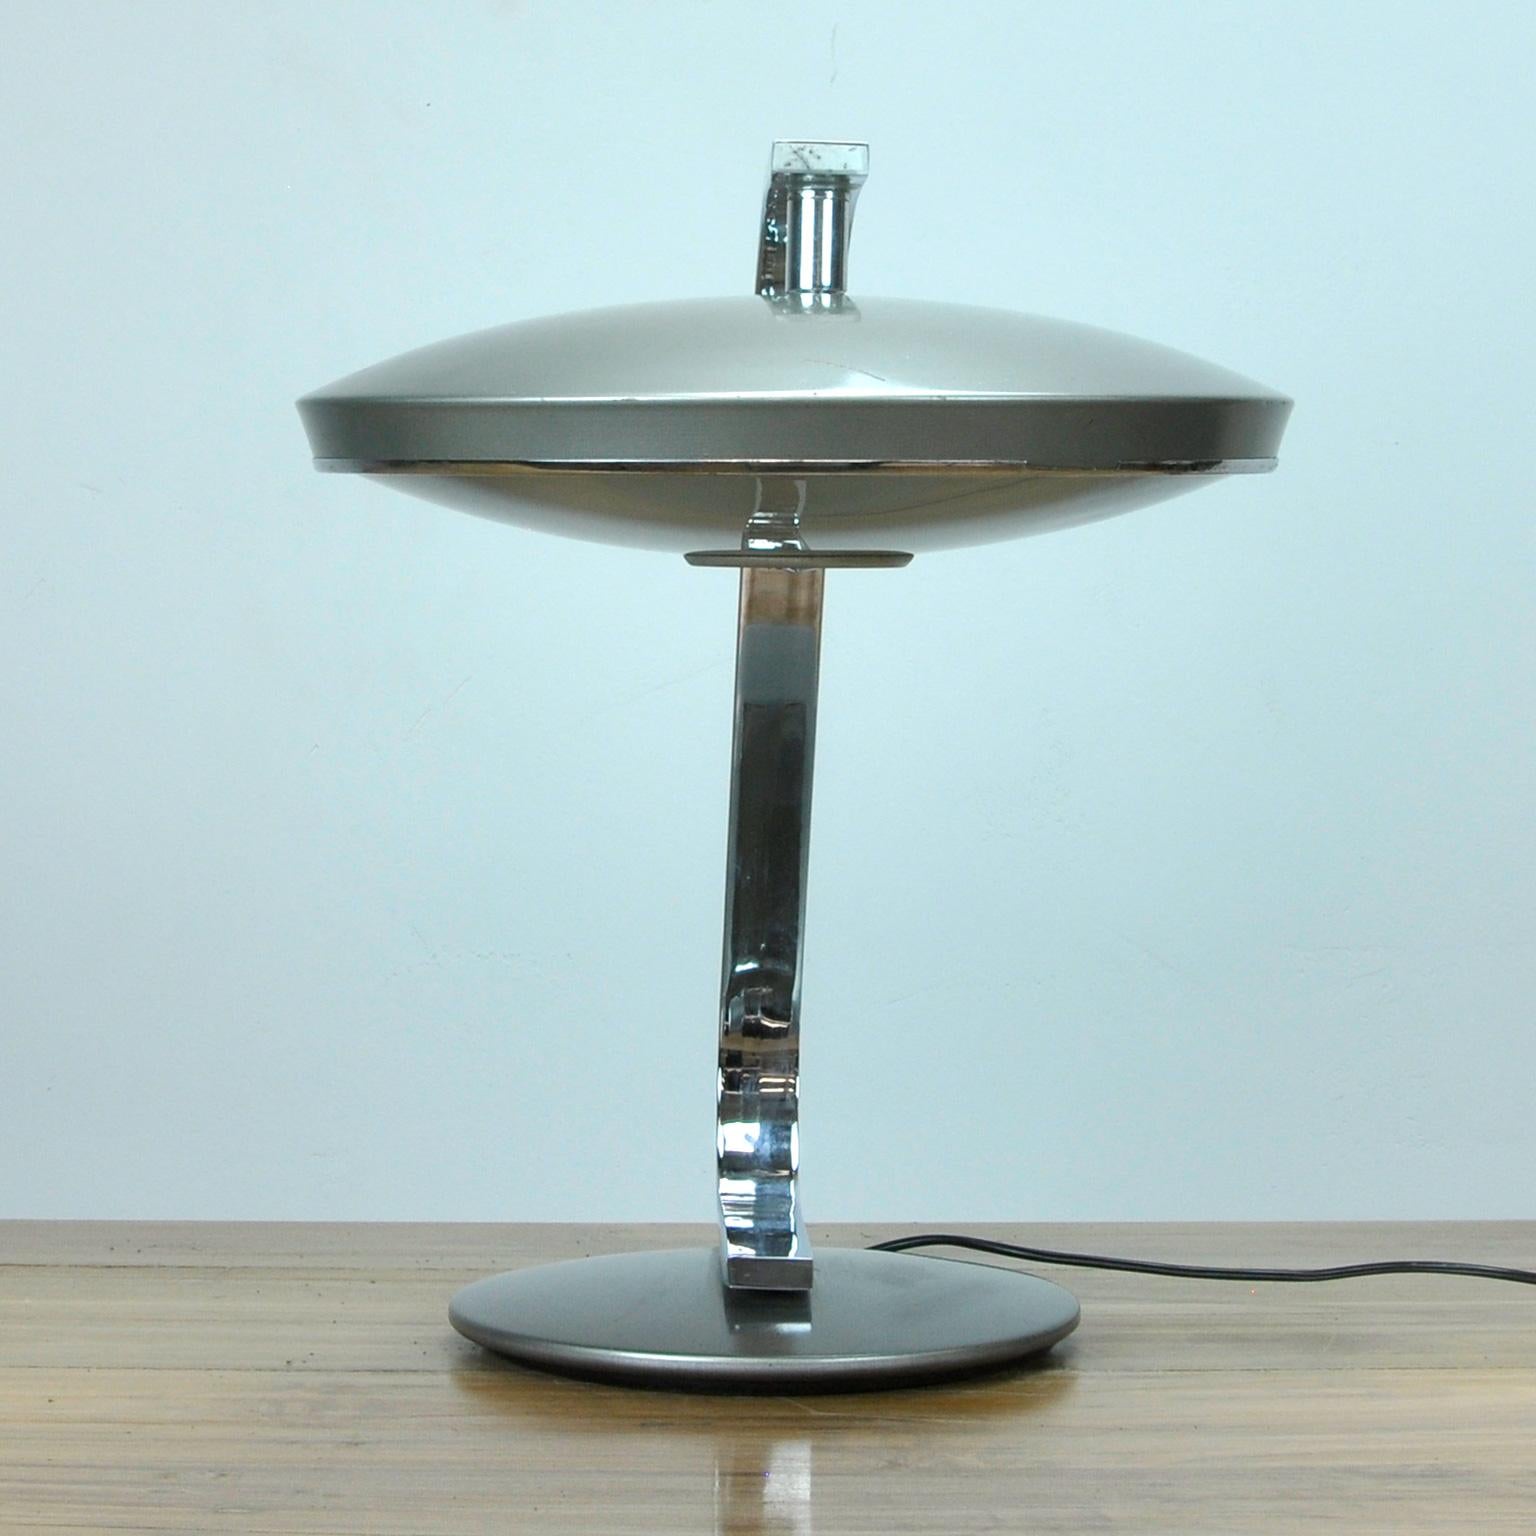 Industrial Desk Lamp Model 520 by Fase, 1970's